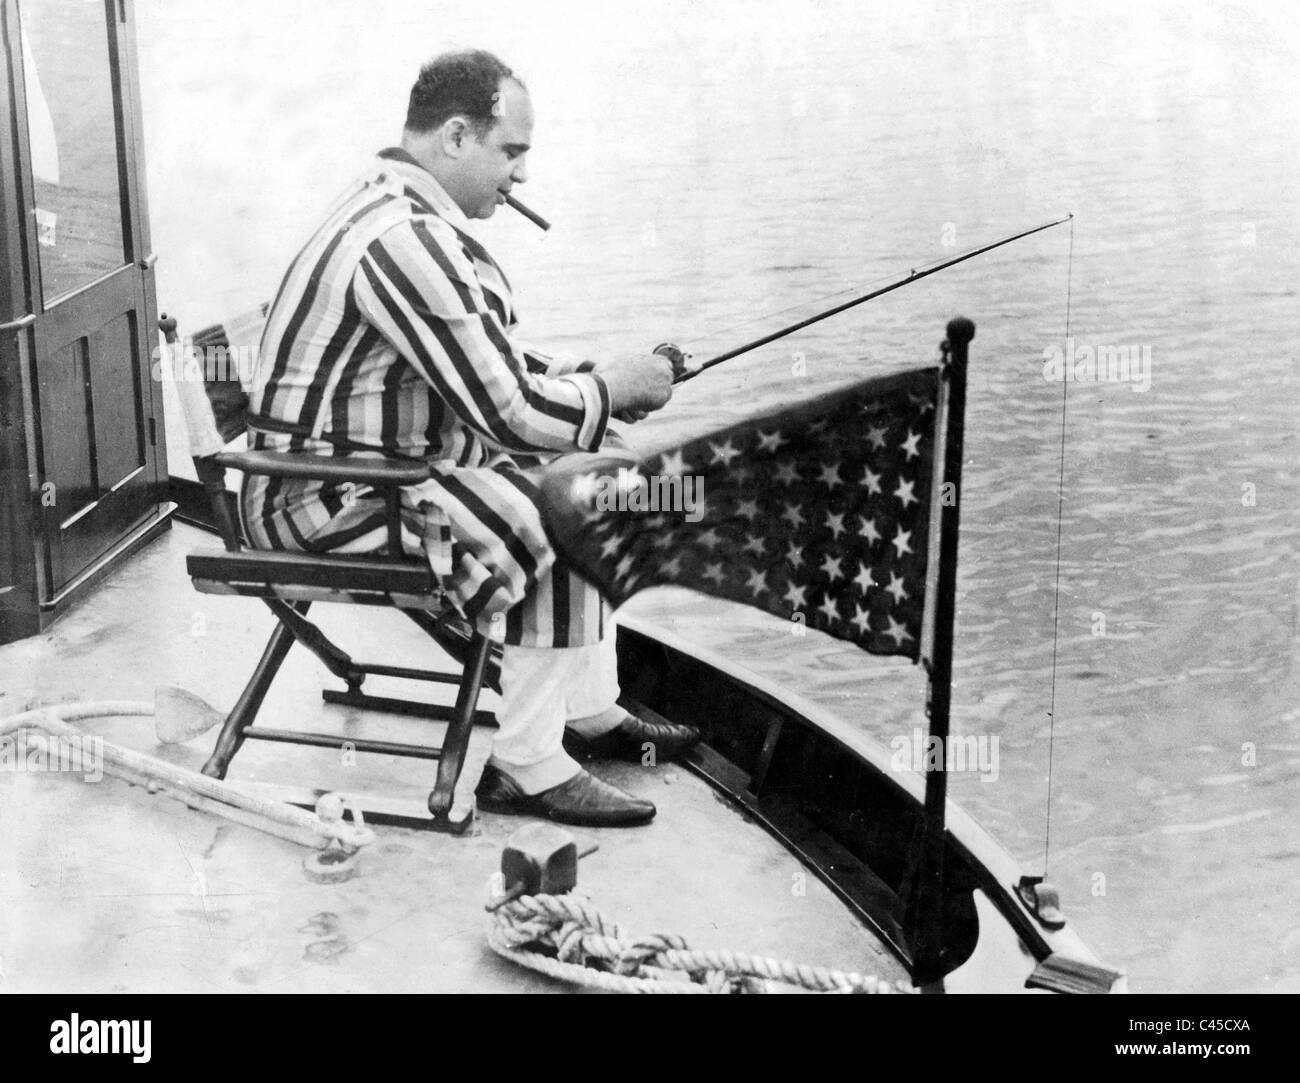 Al Capone au cours de la pêche, 1930 Banque D'Images